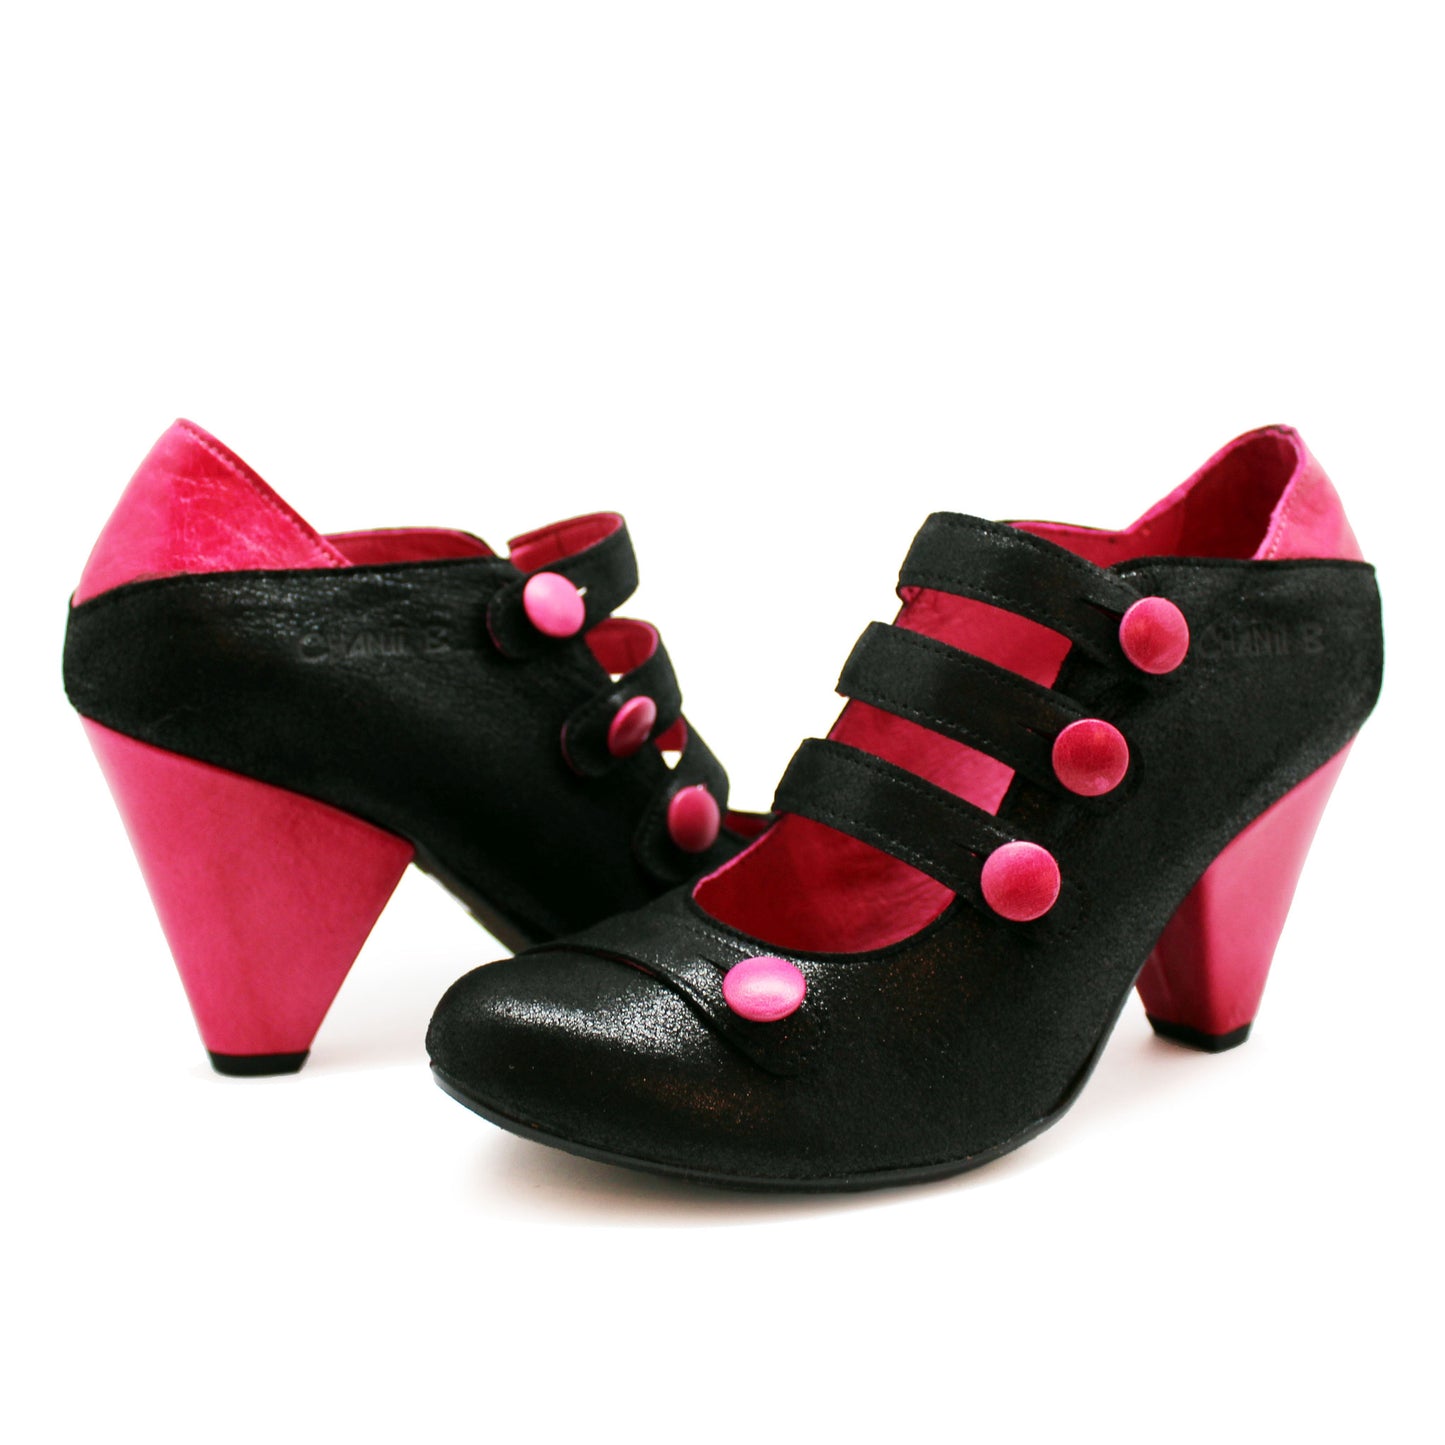 Voila - Black/Fuchsia button heel shoe- Last pairs 35 & 39